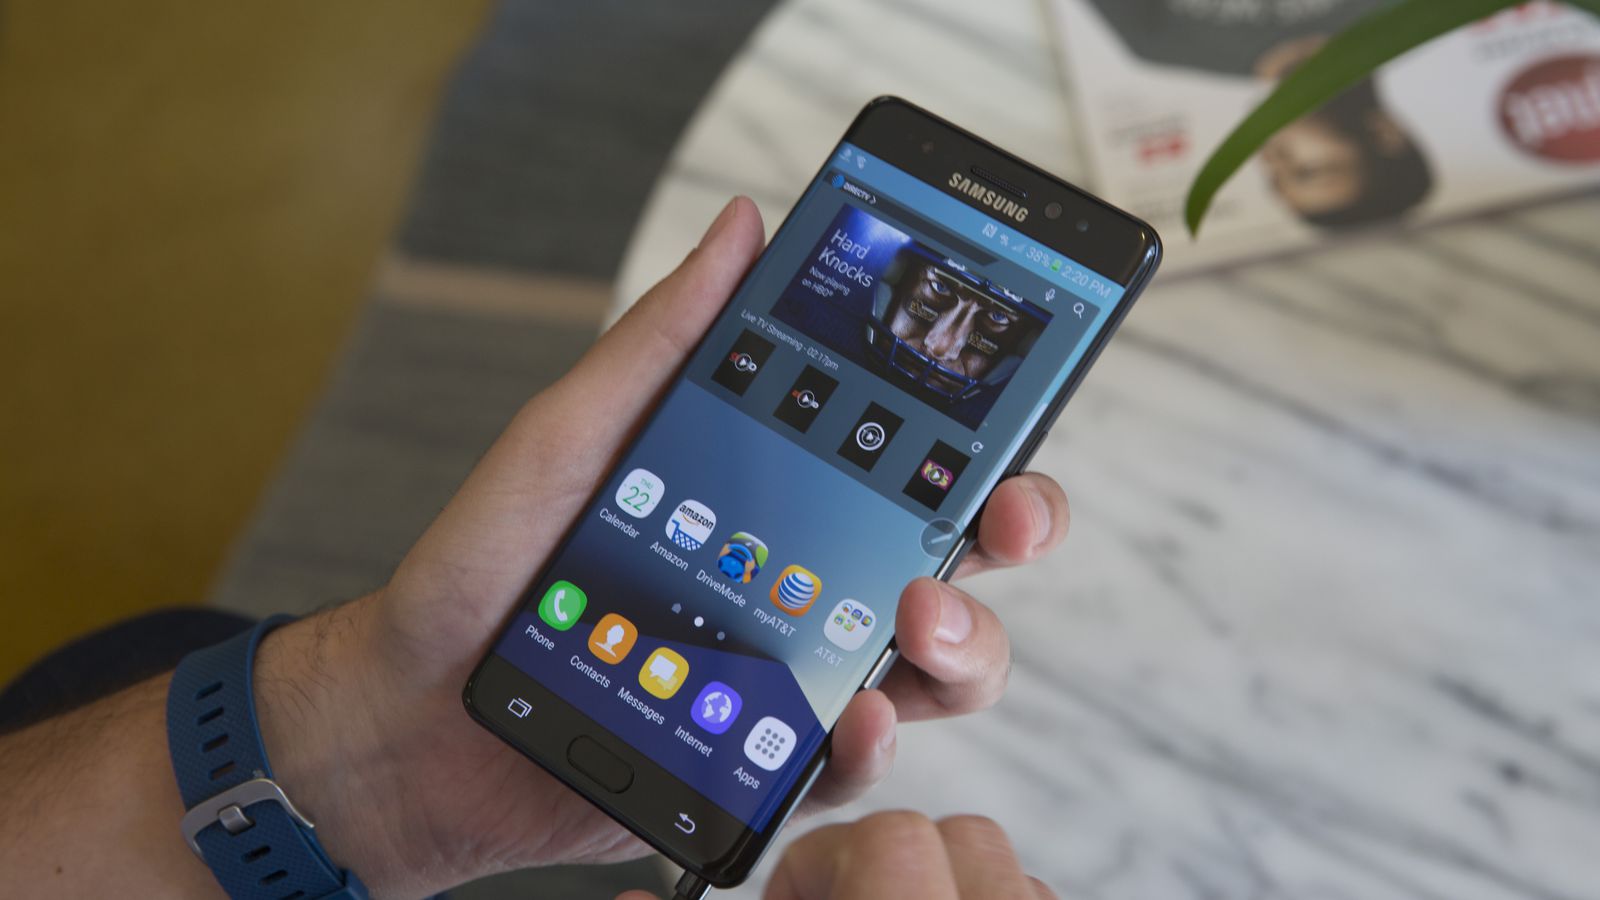 new samsung galaxy note 7 3 | Samsung Galaxy Note 7 | ผลสำรวจชี้ผู้ใช้ 40% ในสหรัฐฯจะไม่กลับไปใช้อุปกรณ์ของ Samsung อีก